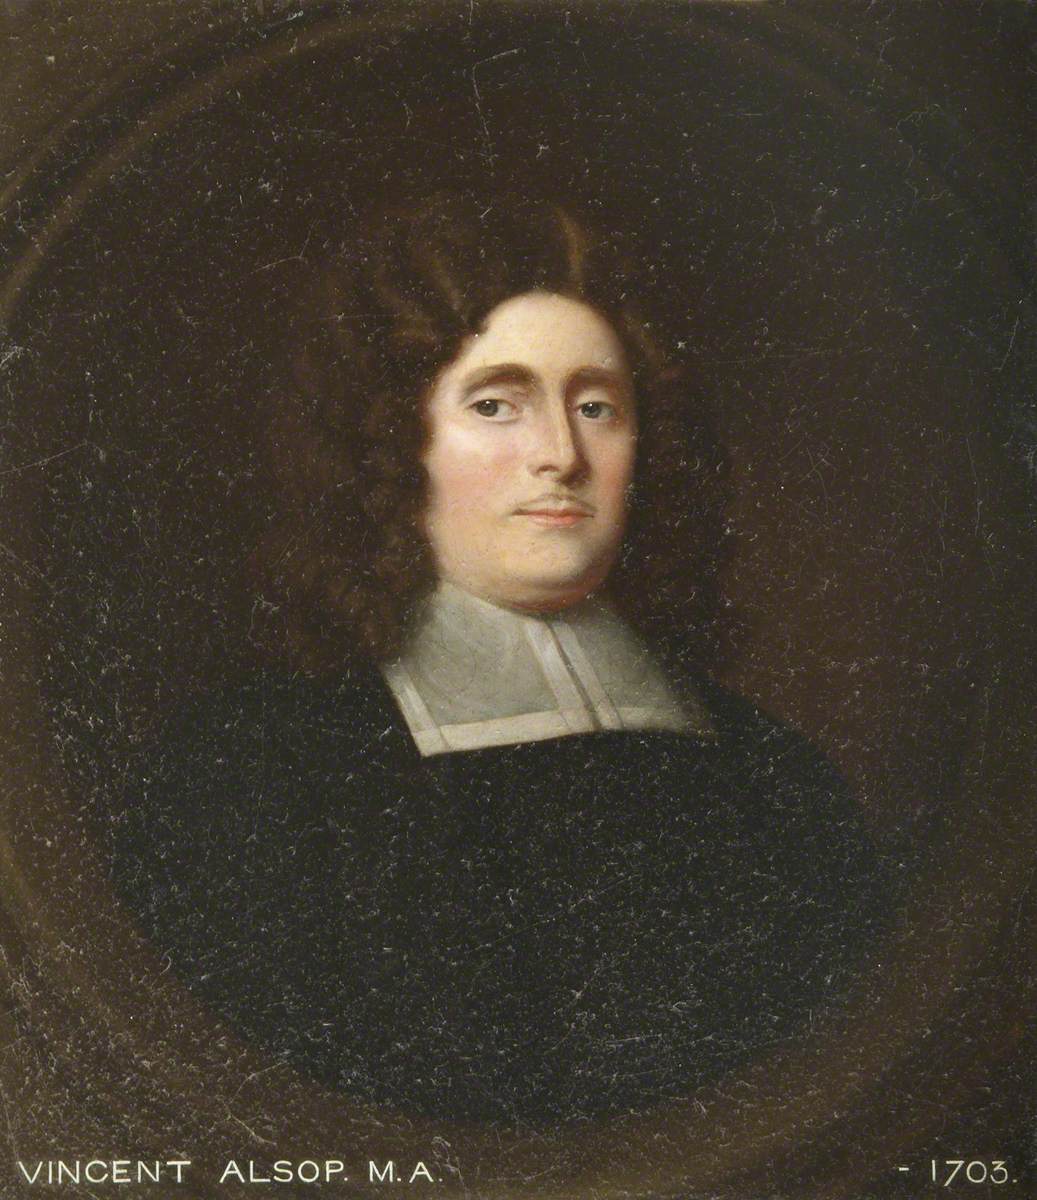 Vincent Alsop (d.1703), MA